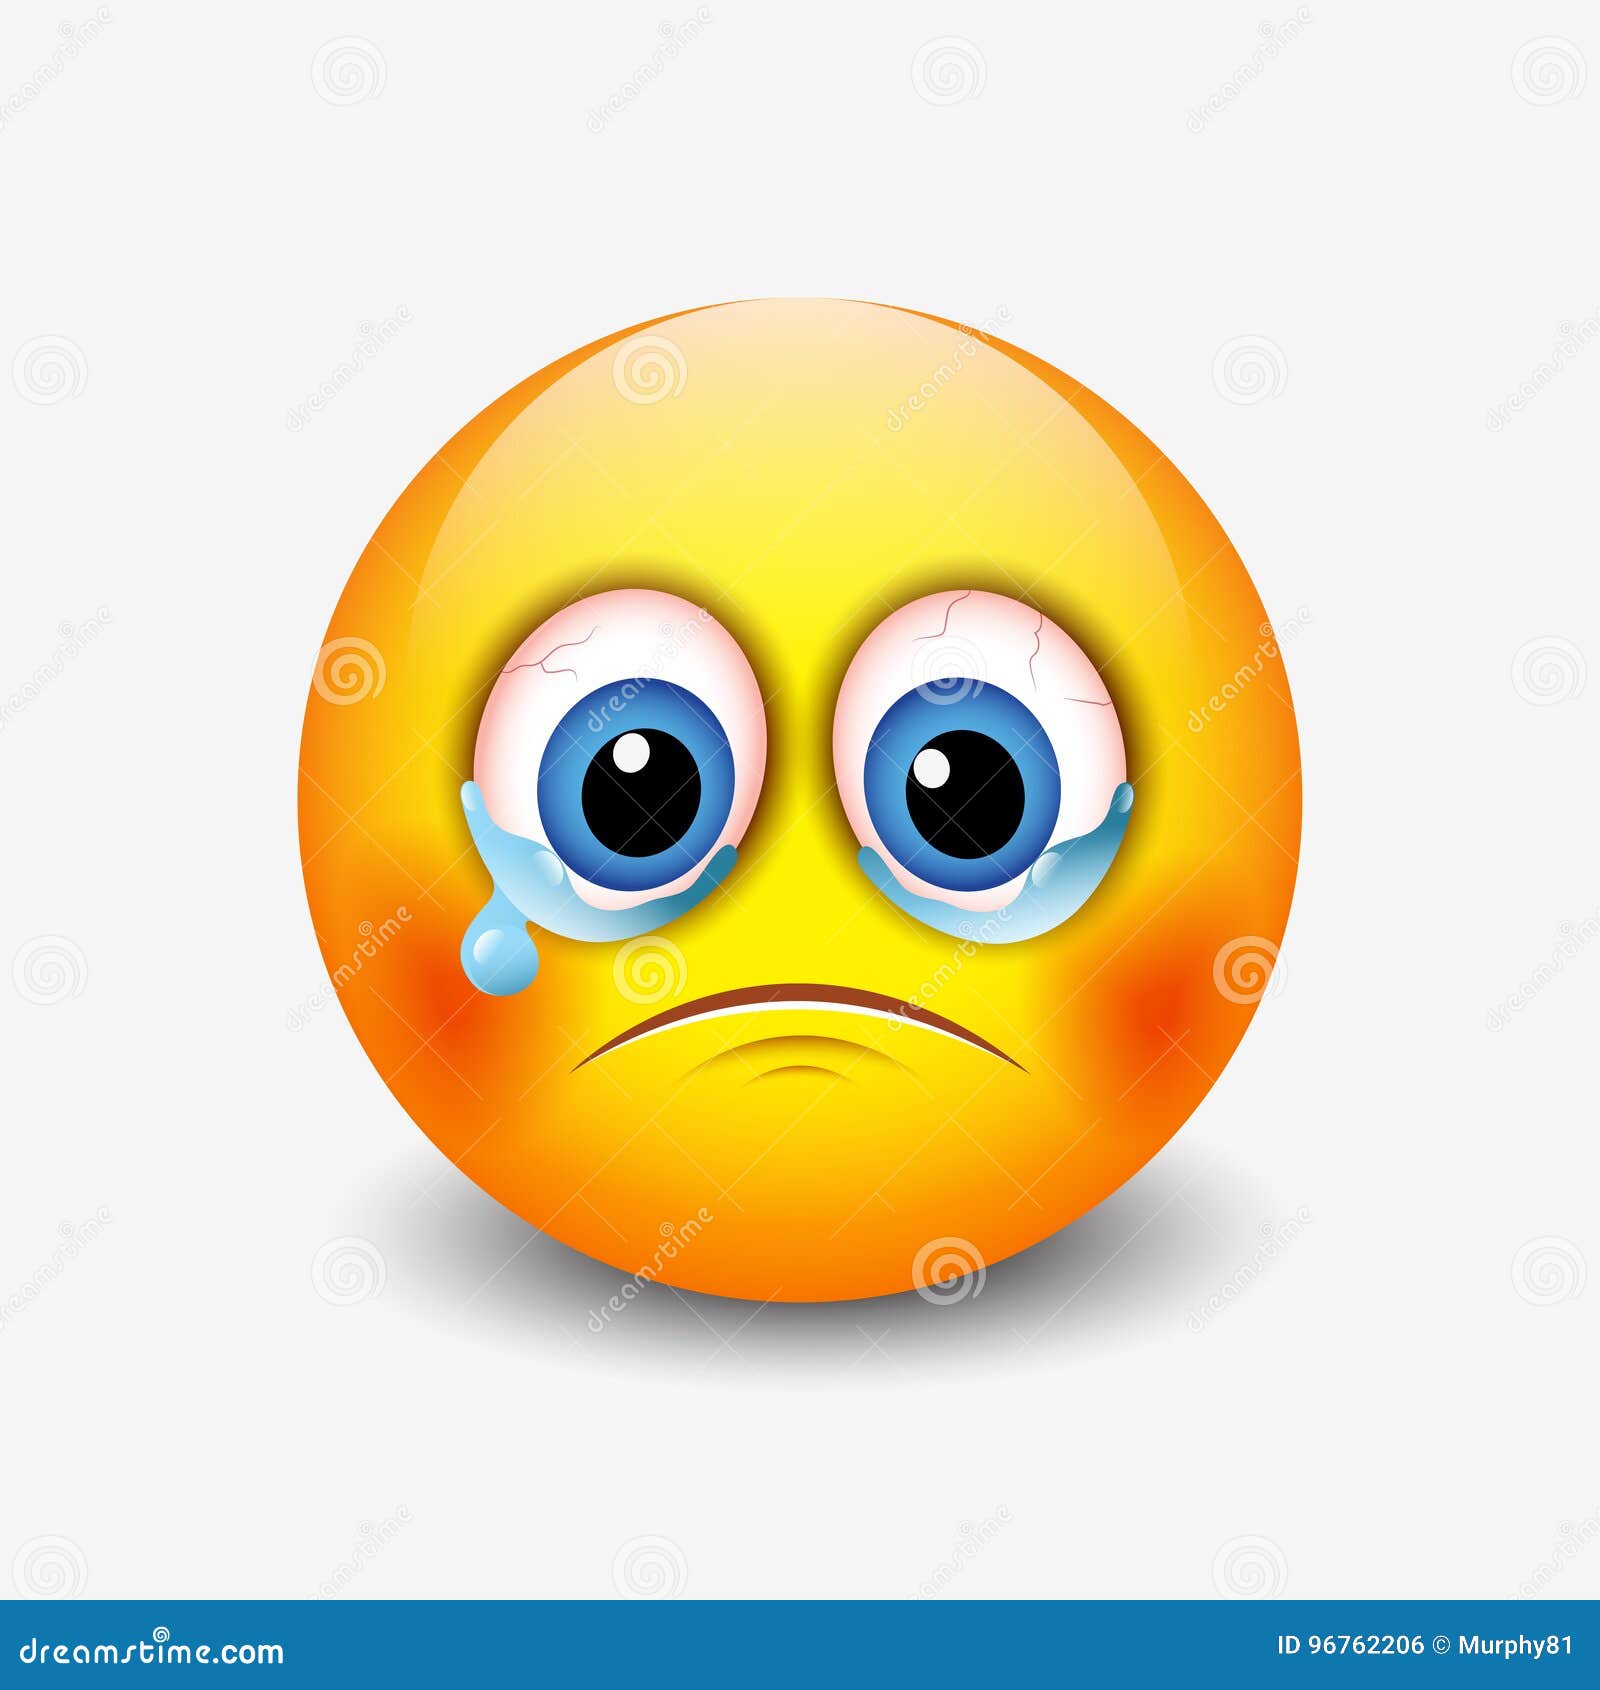 Sad Face Emoji Vector Images